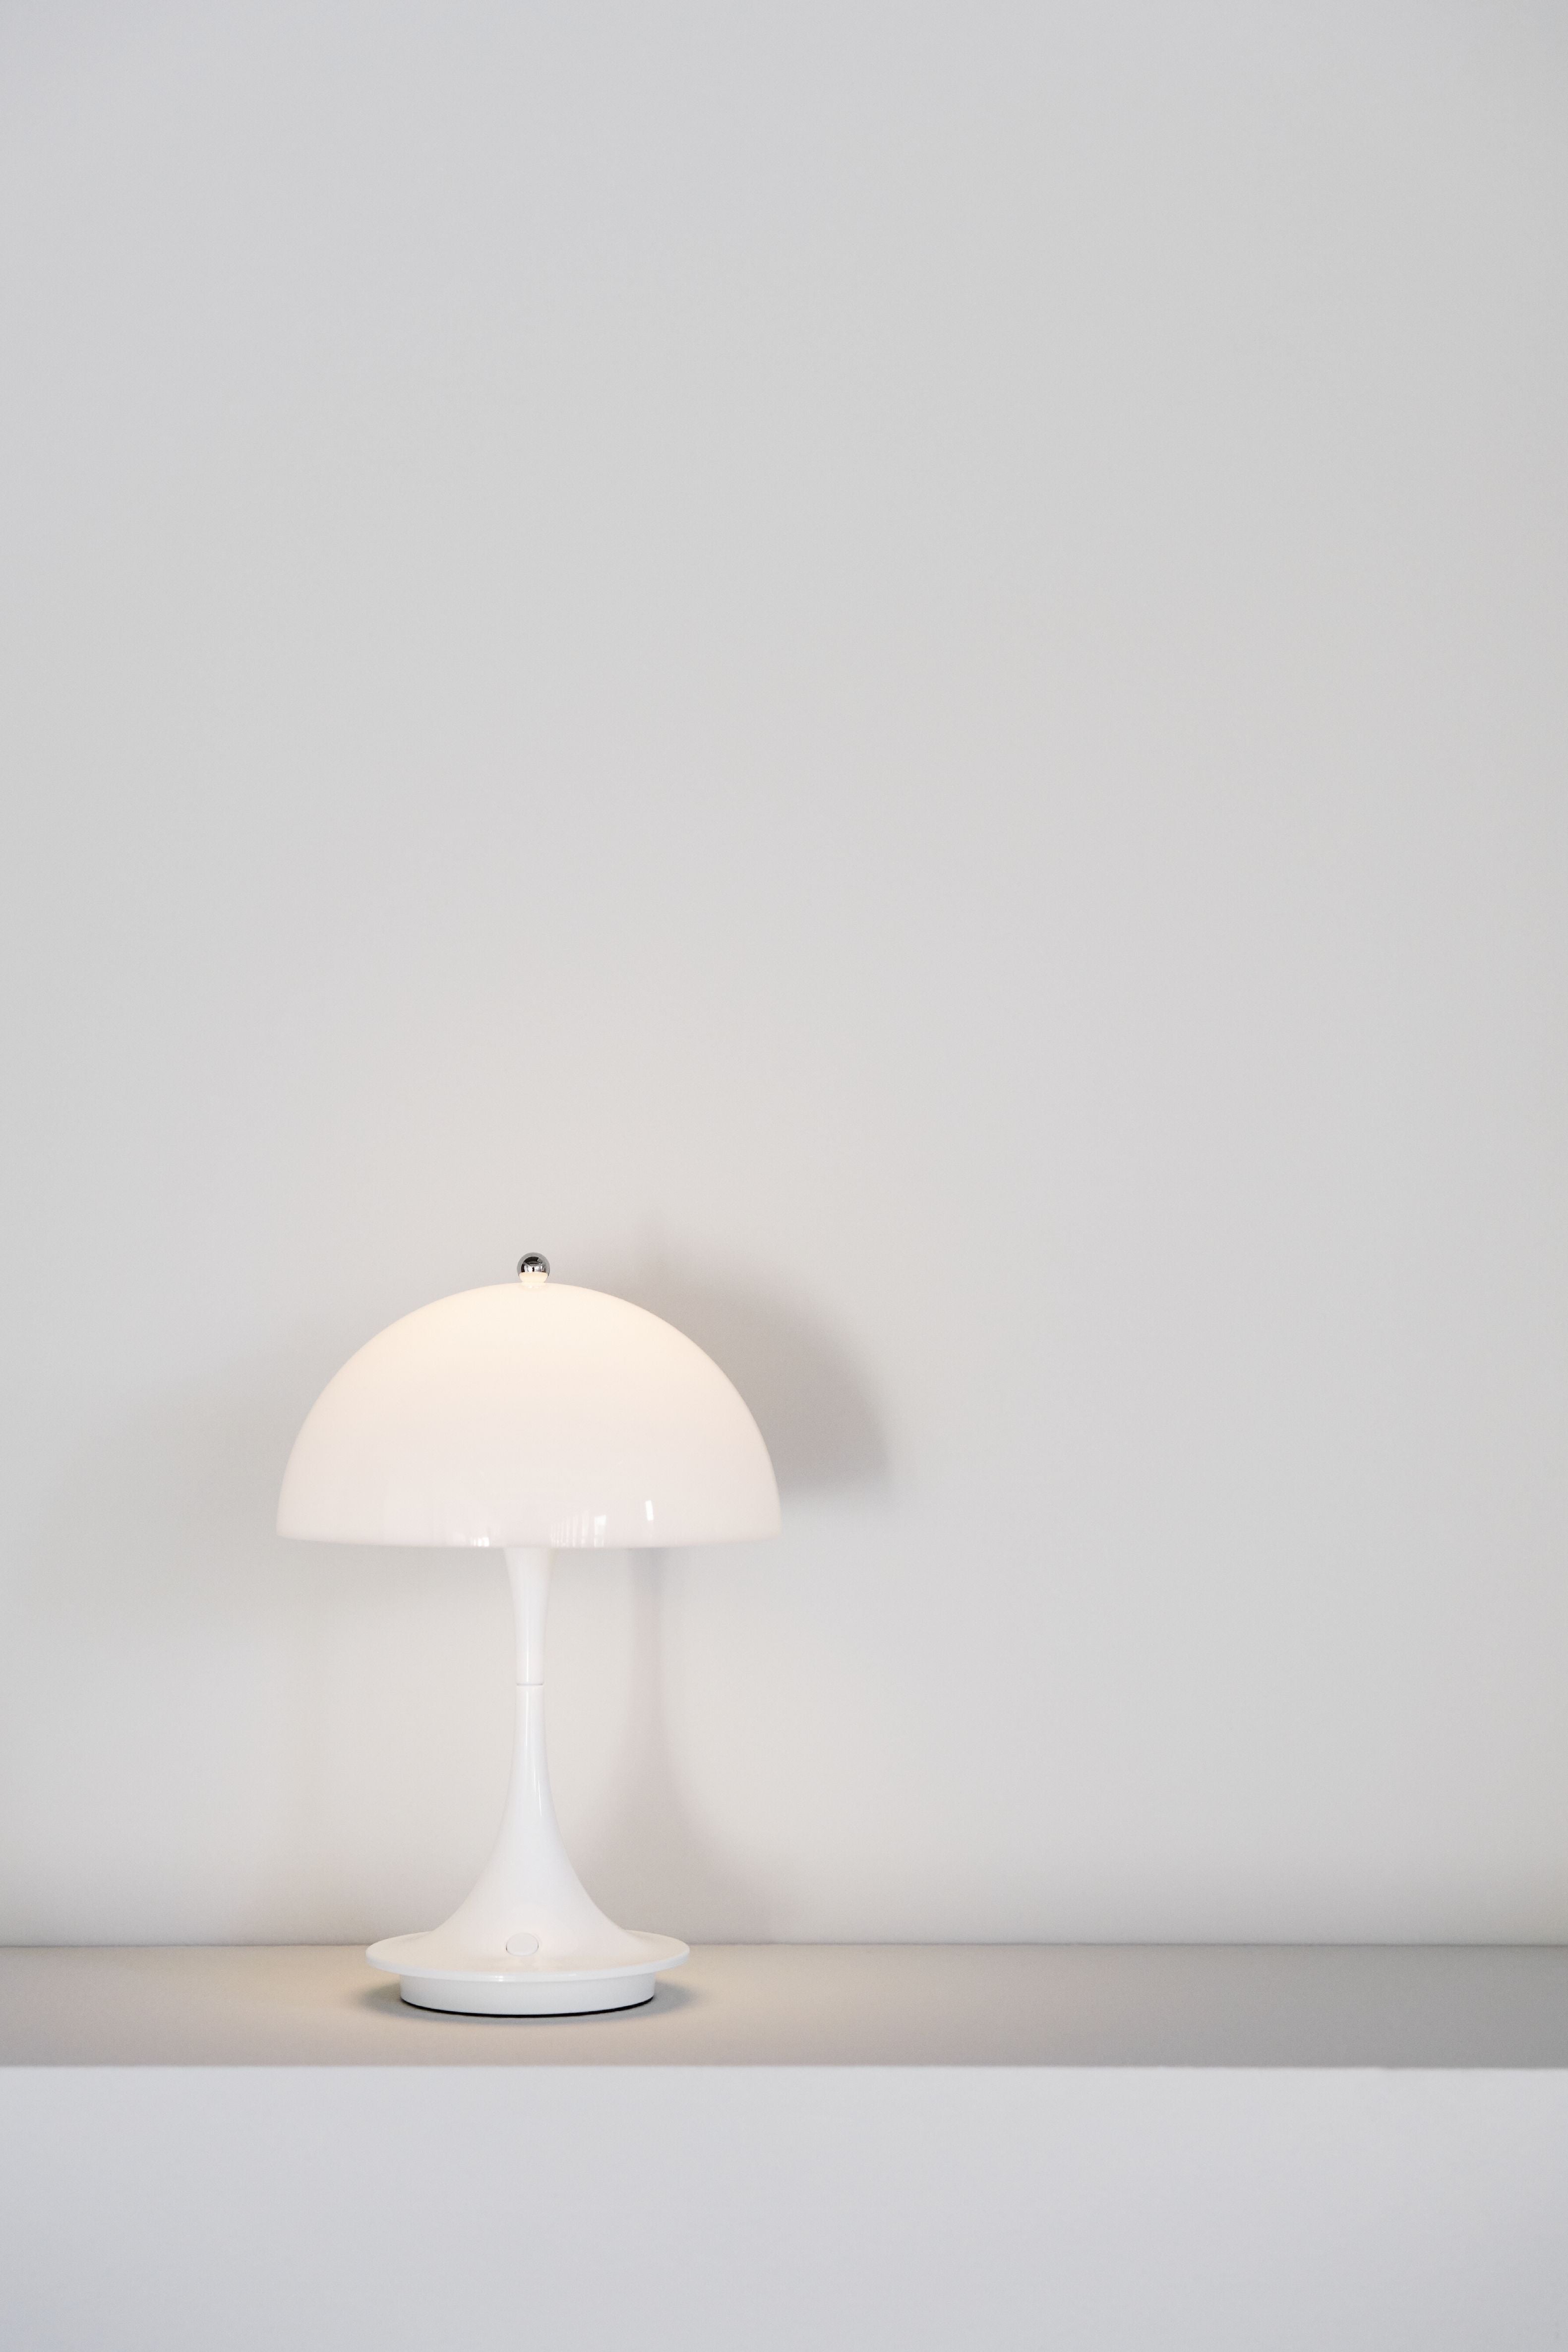 Louis Poulsen Panthella 160 Przenośna lampa stołowa V2 LED 27 K, akrylowy opal biały